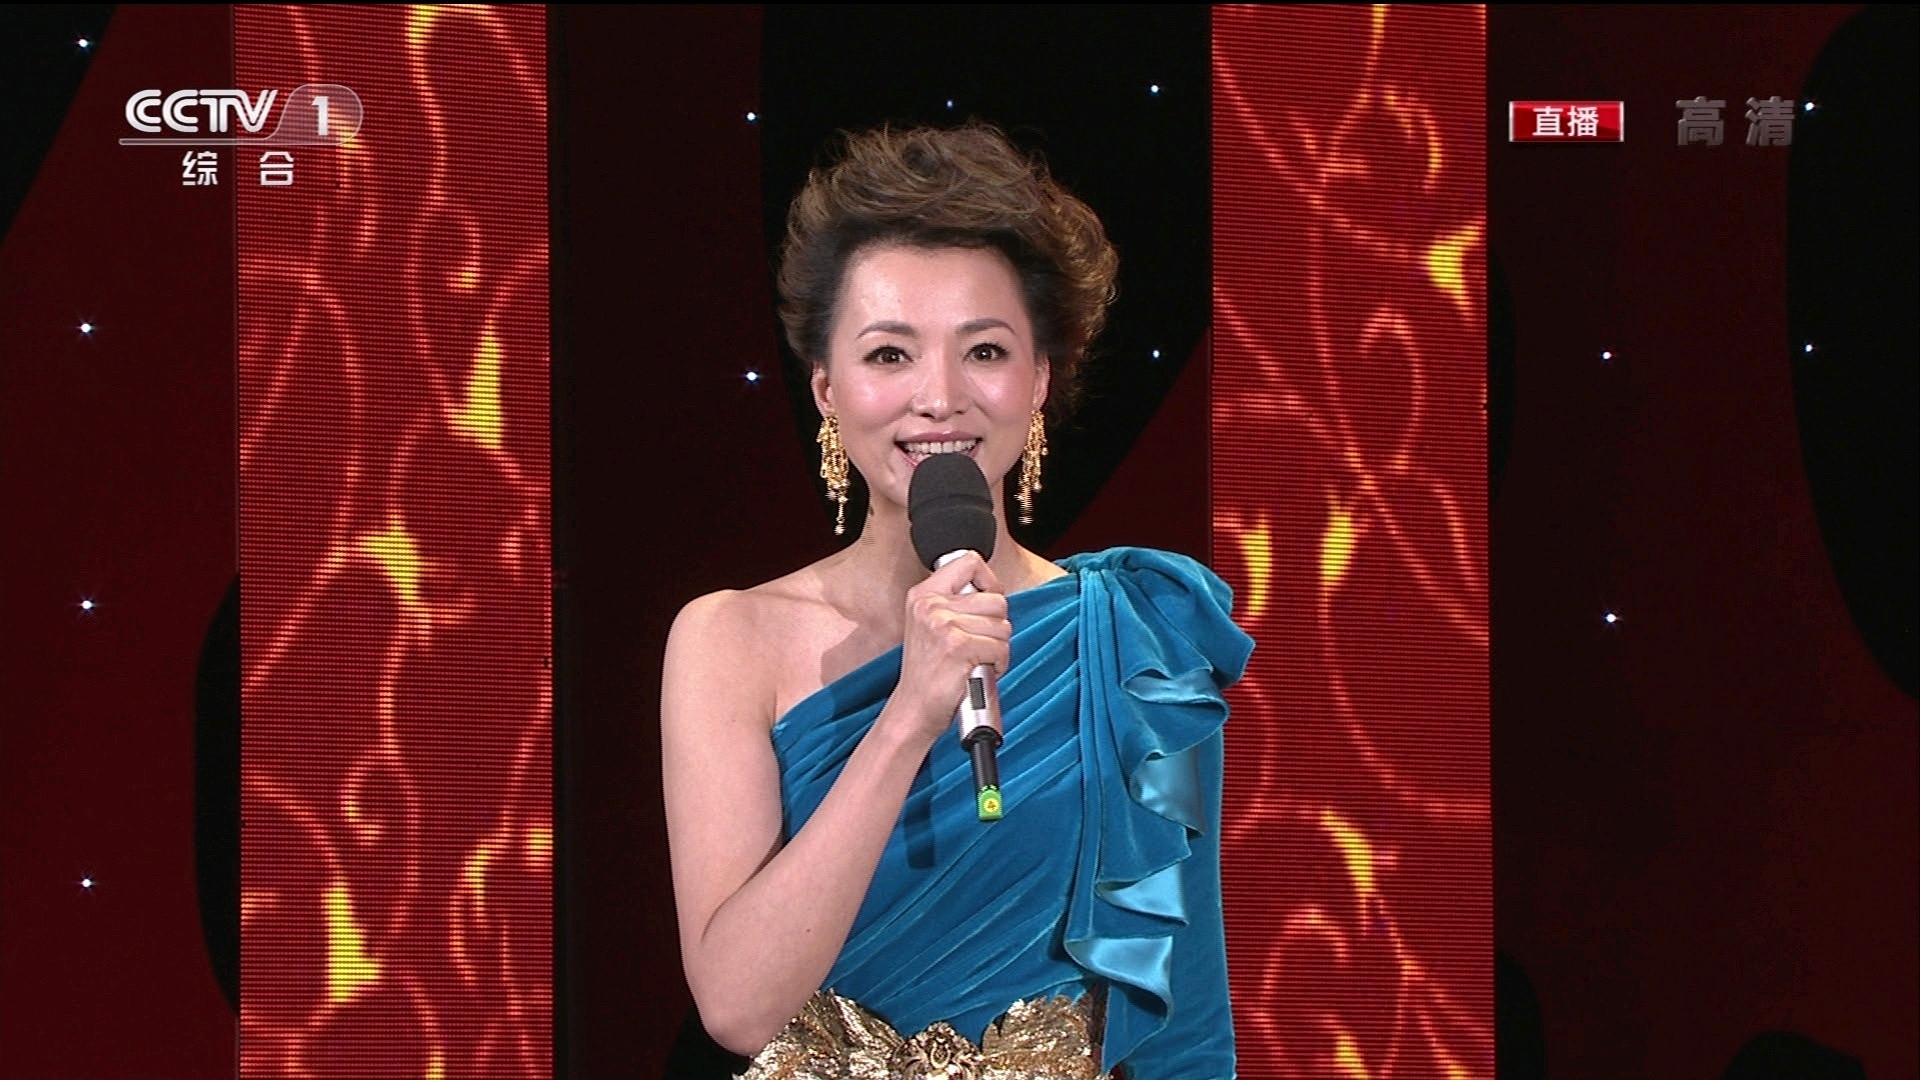 2011年中央电视台春节联欢晚会 高清版1080i截图(16:9